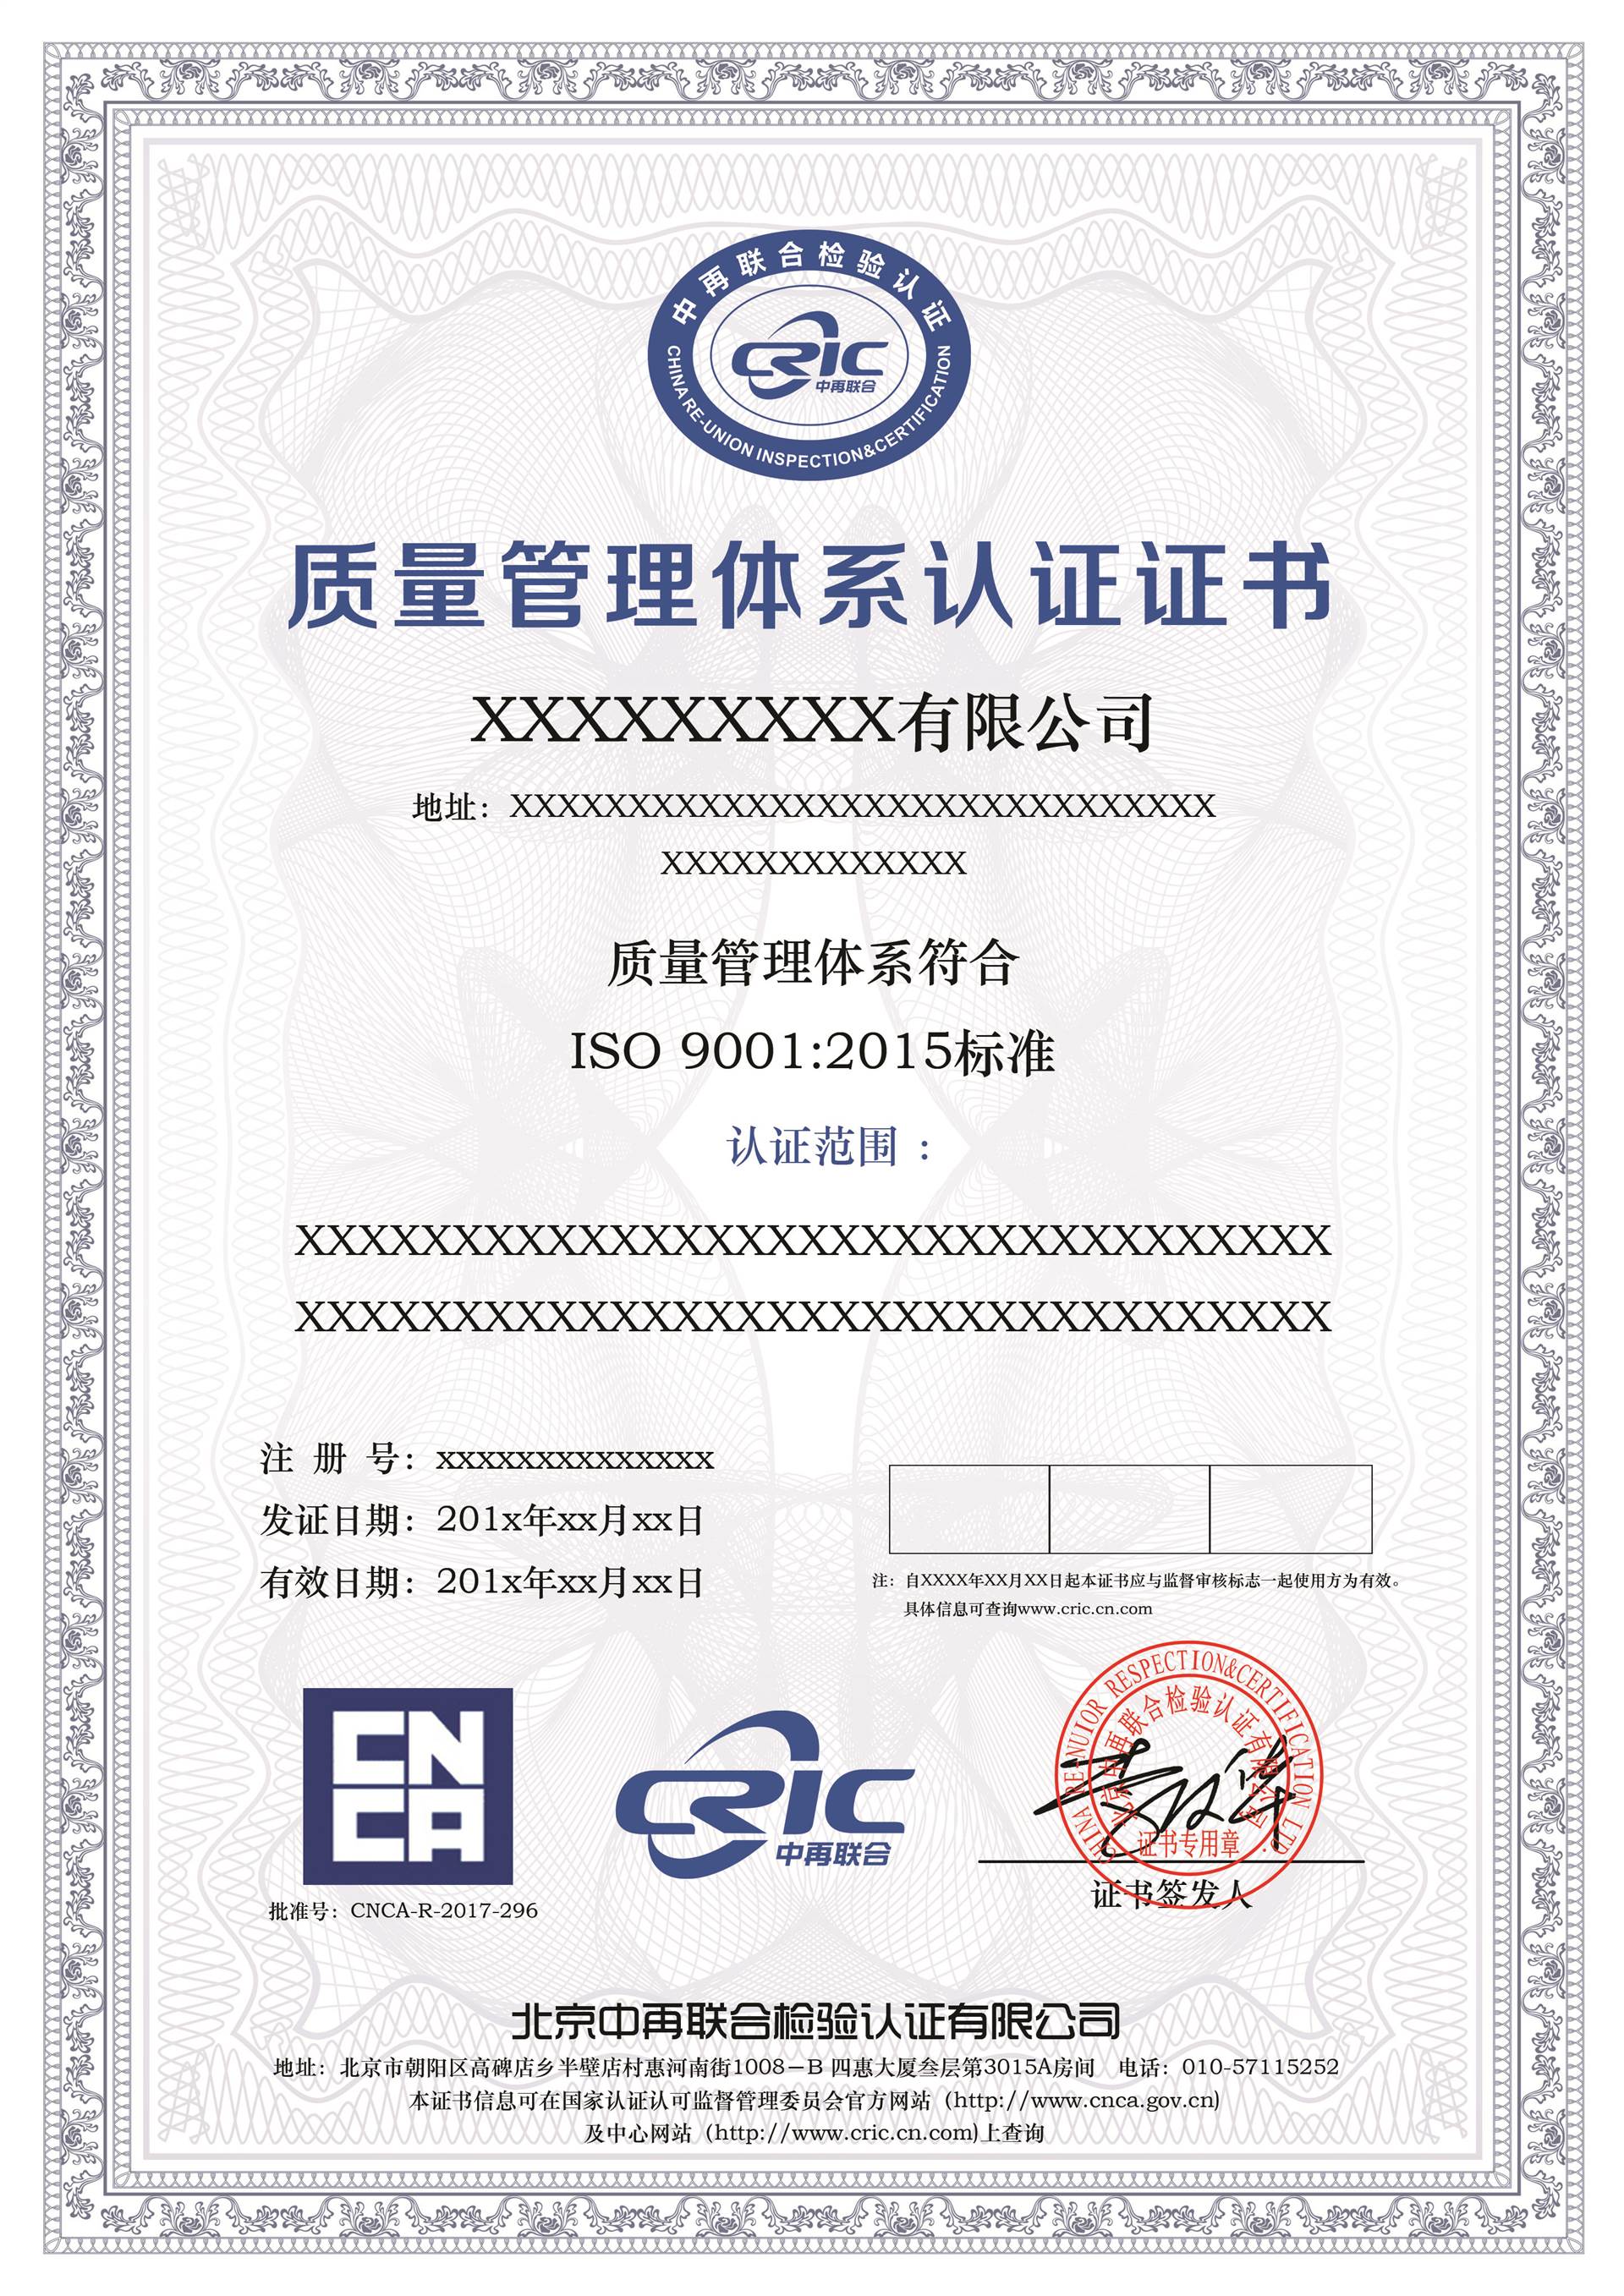 价 格:iso20000 产品描述一,申请iso20000 认证的基本条件1,中国企业